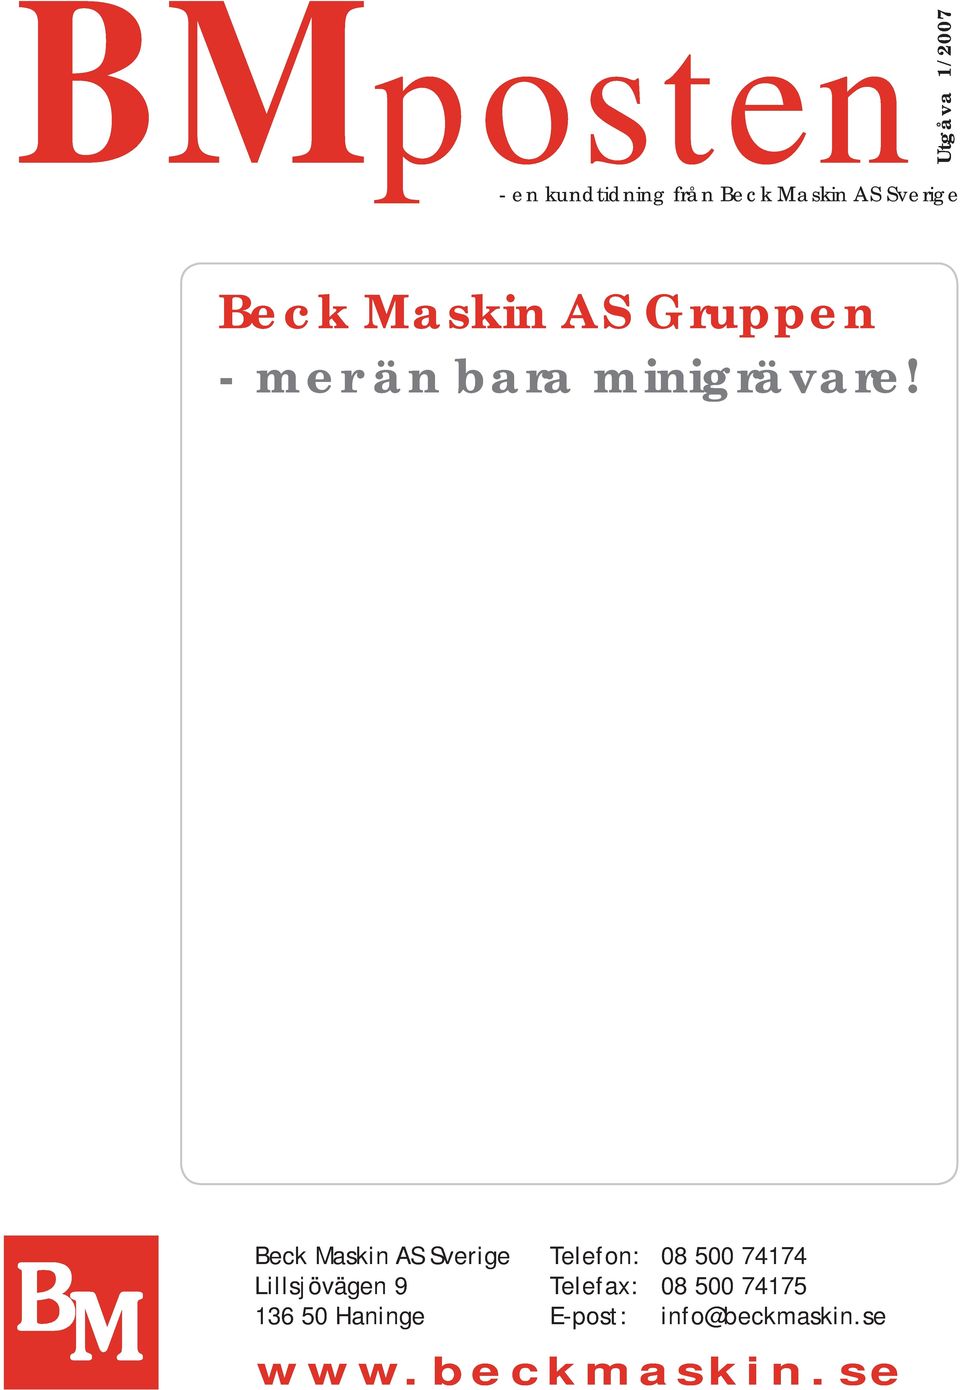 Beck Maskin AS Sverige Lillsjövägen 9 136 50 Haninge Telefon: